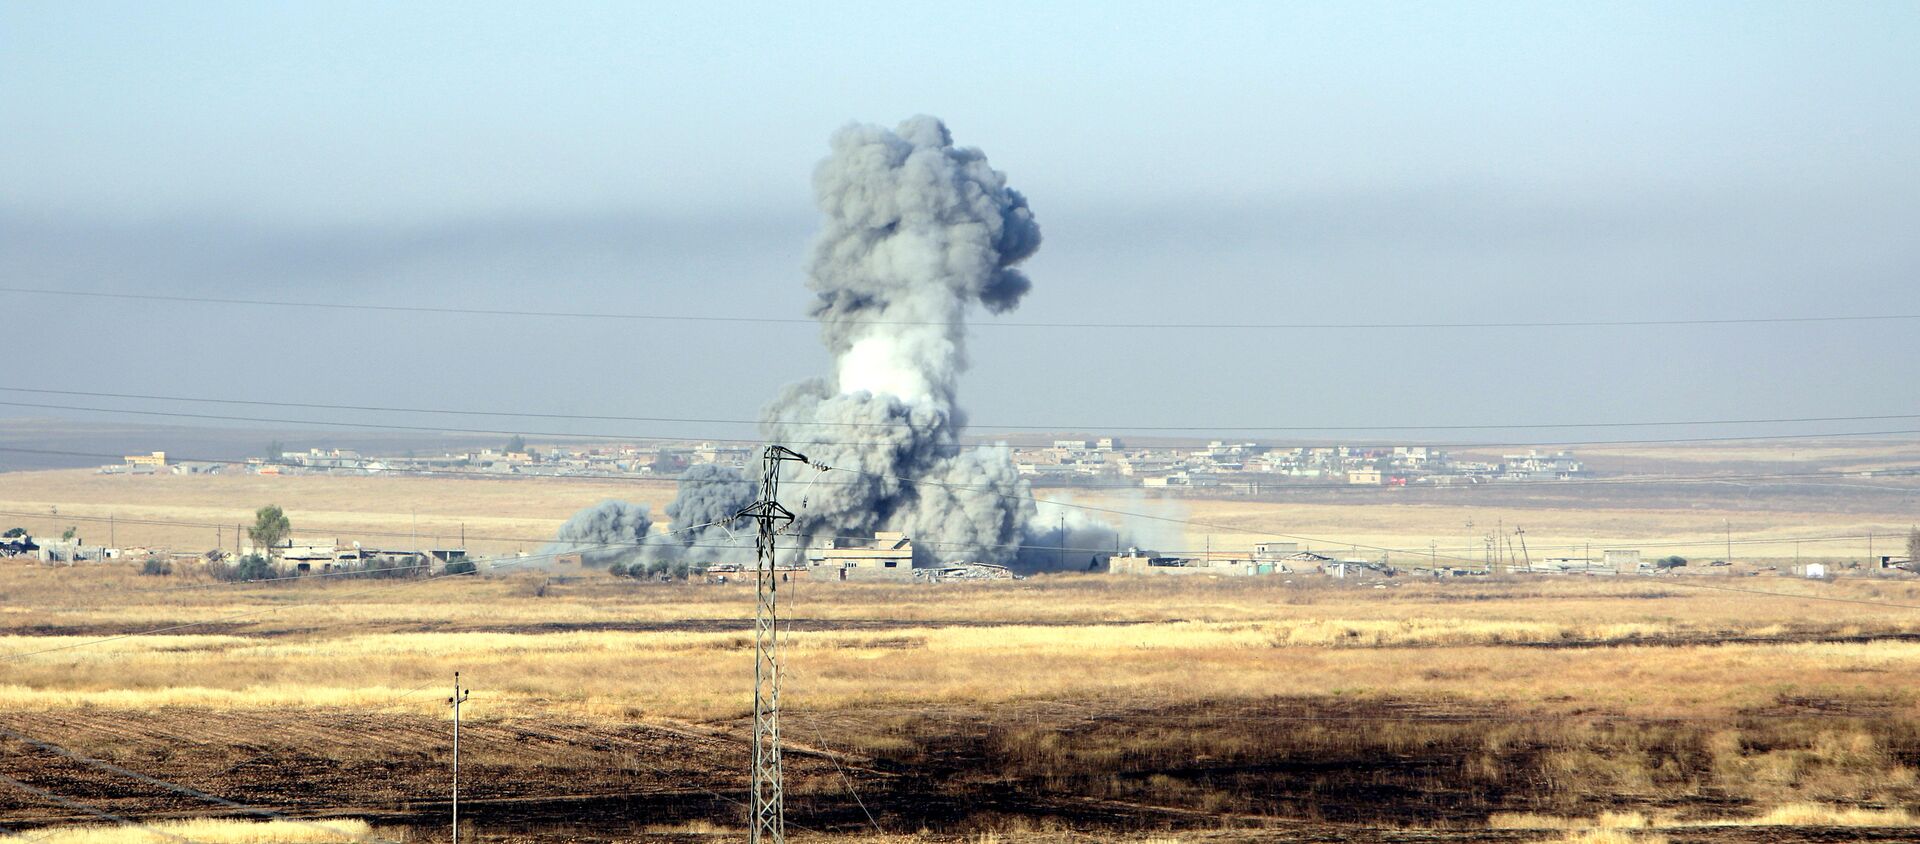 Ataque aéreo contra Daesh de la coalición liderada por EEUU - Sputnik Mundo, 1920, 18.11.2016